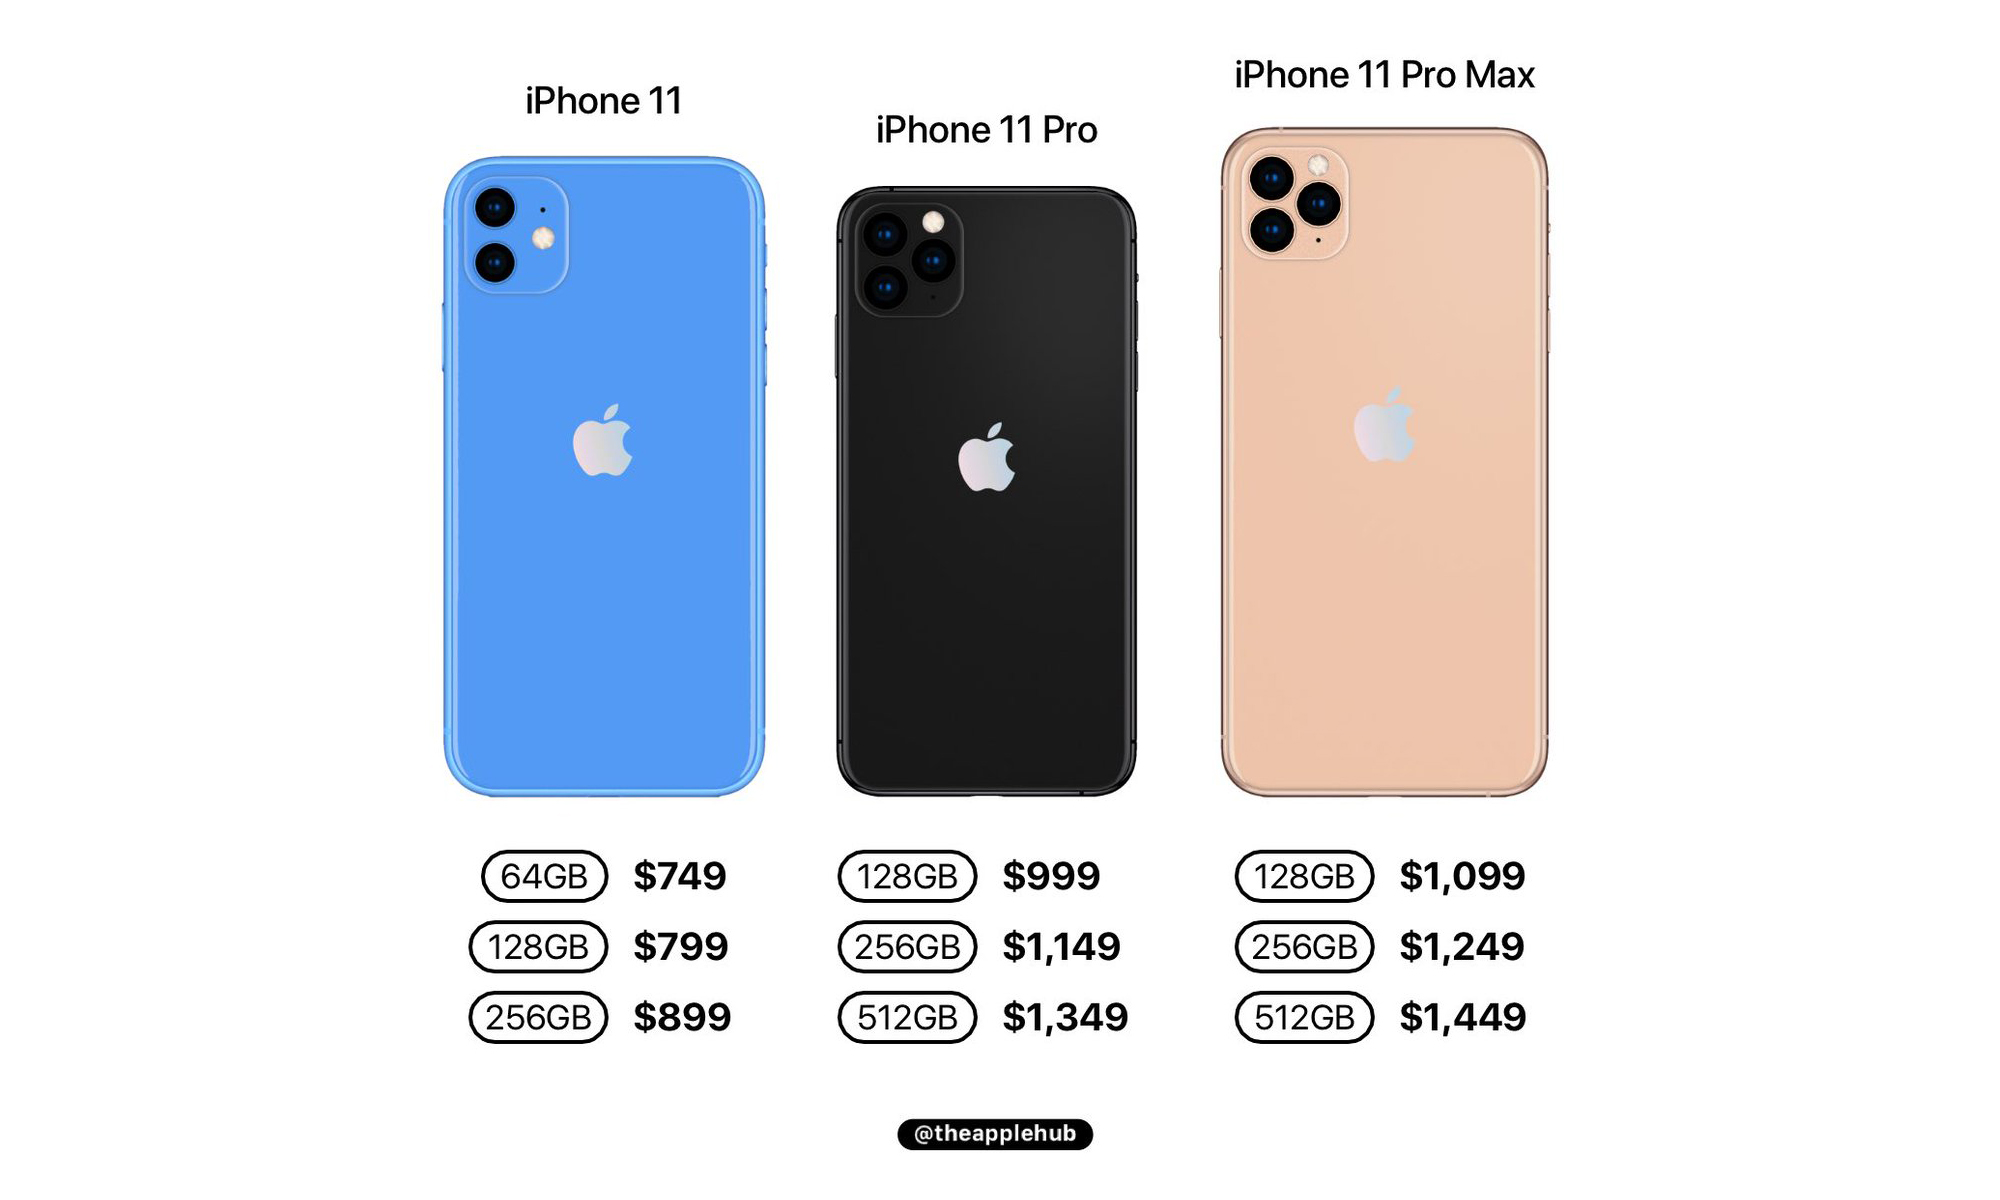 11 и 11 про айфон сравнение размеров. Айфон 11 и 11 про сравнение размеров. Iphone 11 габариты. Айфон 11 и 12 сравнение размеров. Айфон 11 про ркщмер сравнение.